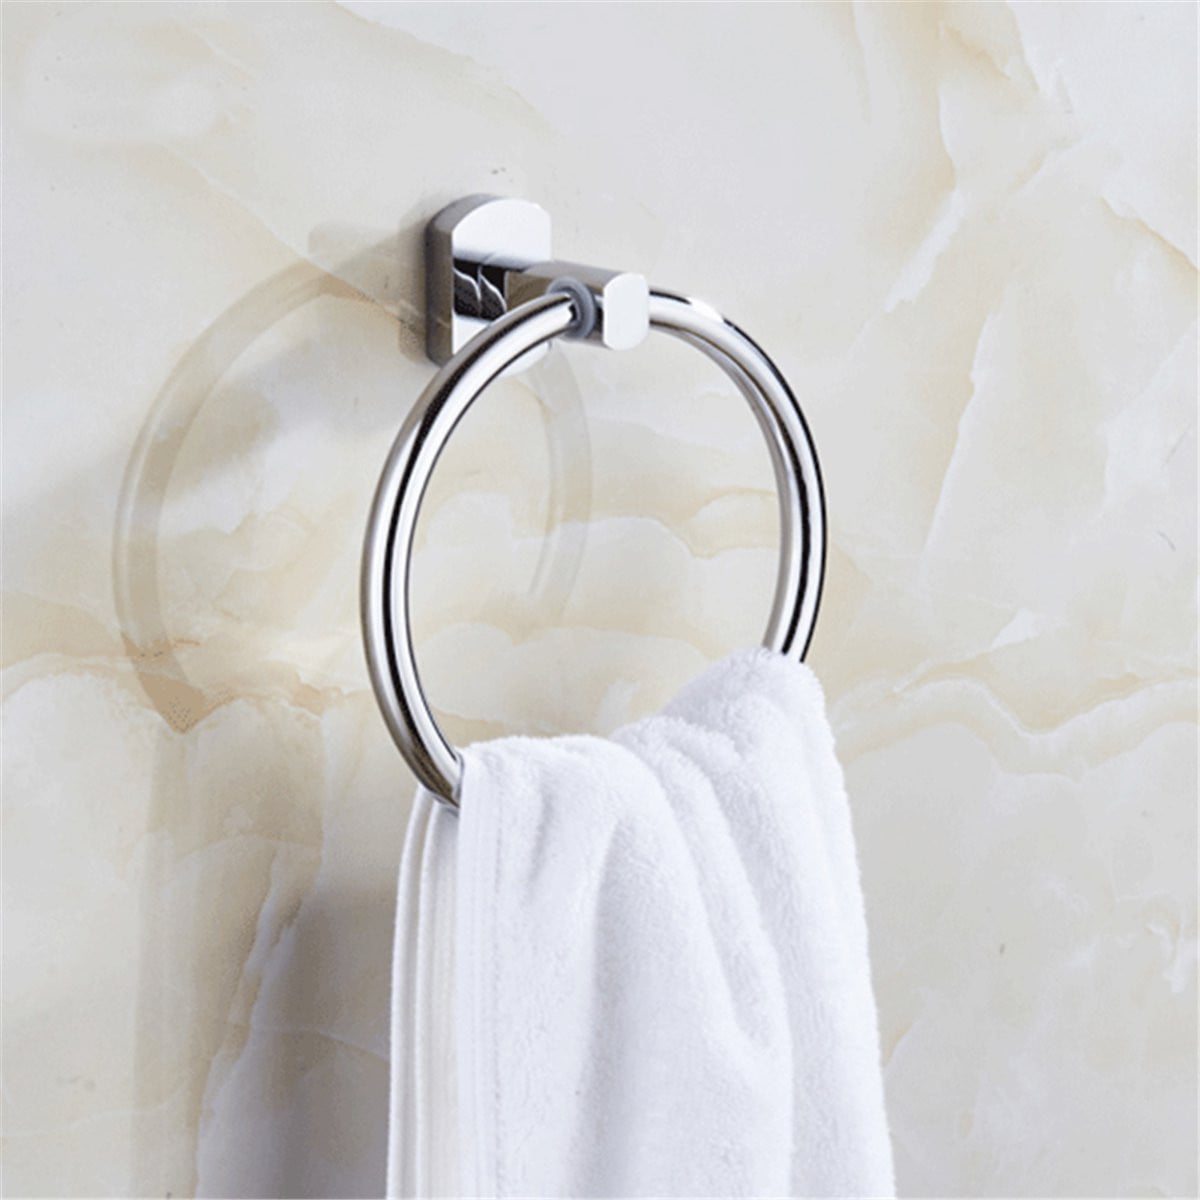 Bathroom Hand Towel Ring/Holder/Rail Stainless Steel Full Chrome Finish EBB 